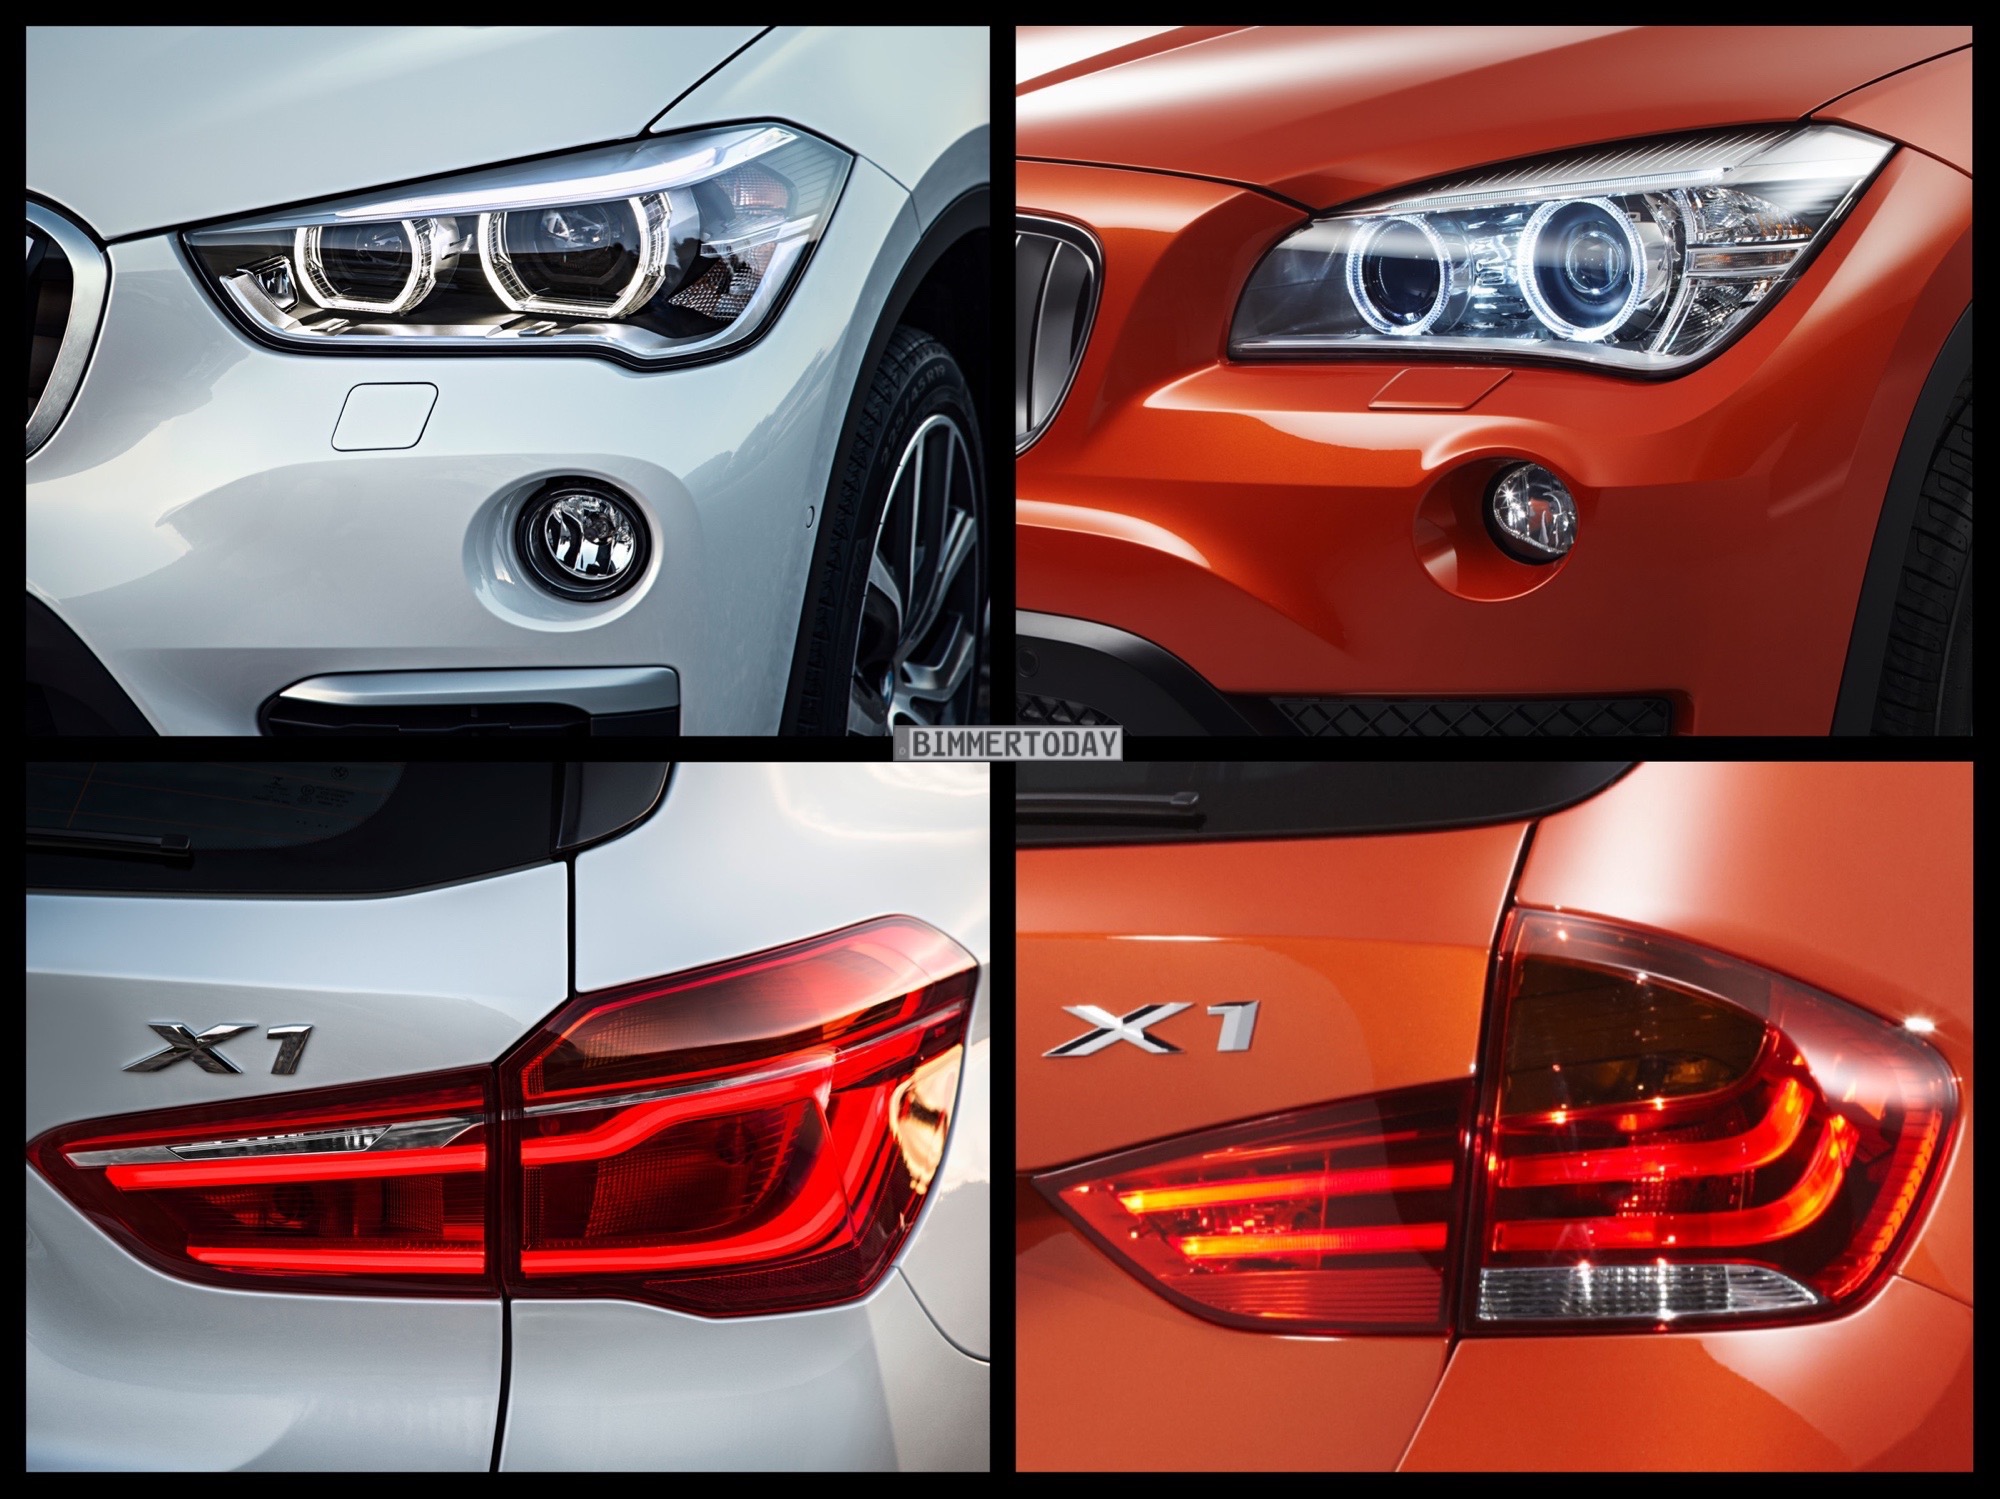 https://cdn.bimmertoday.de/wp-content/uploads/2015/06/Bild-Vergleich-BMW-X1-F48-E84-LCI-xDrive-2015-06.jpg